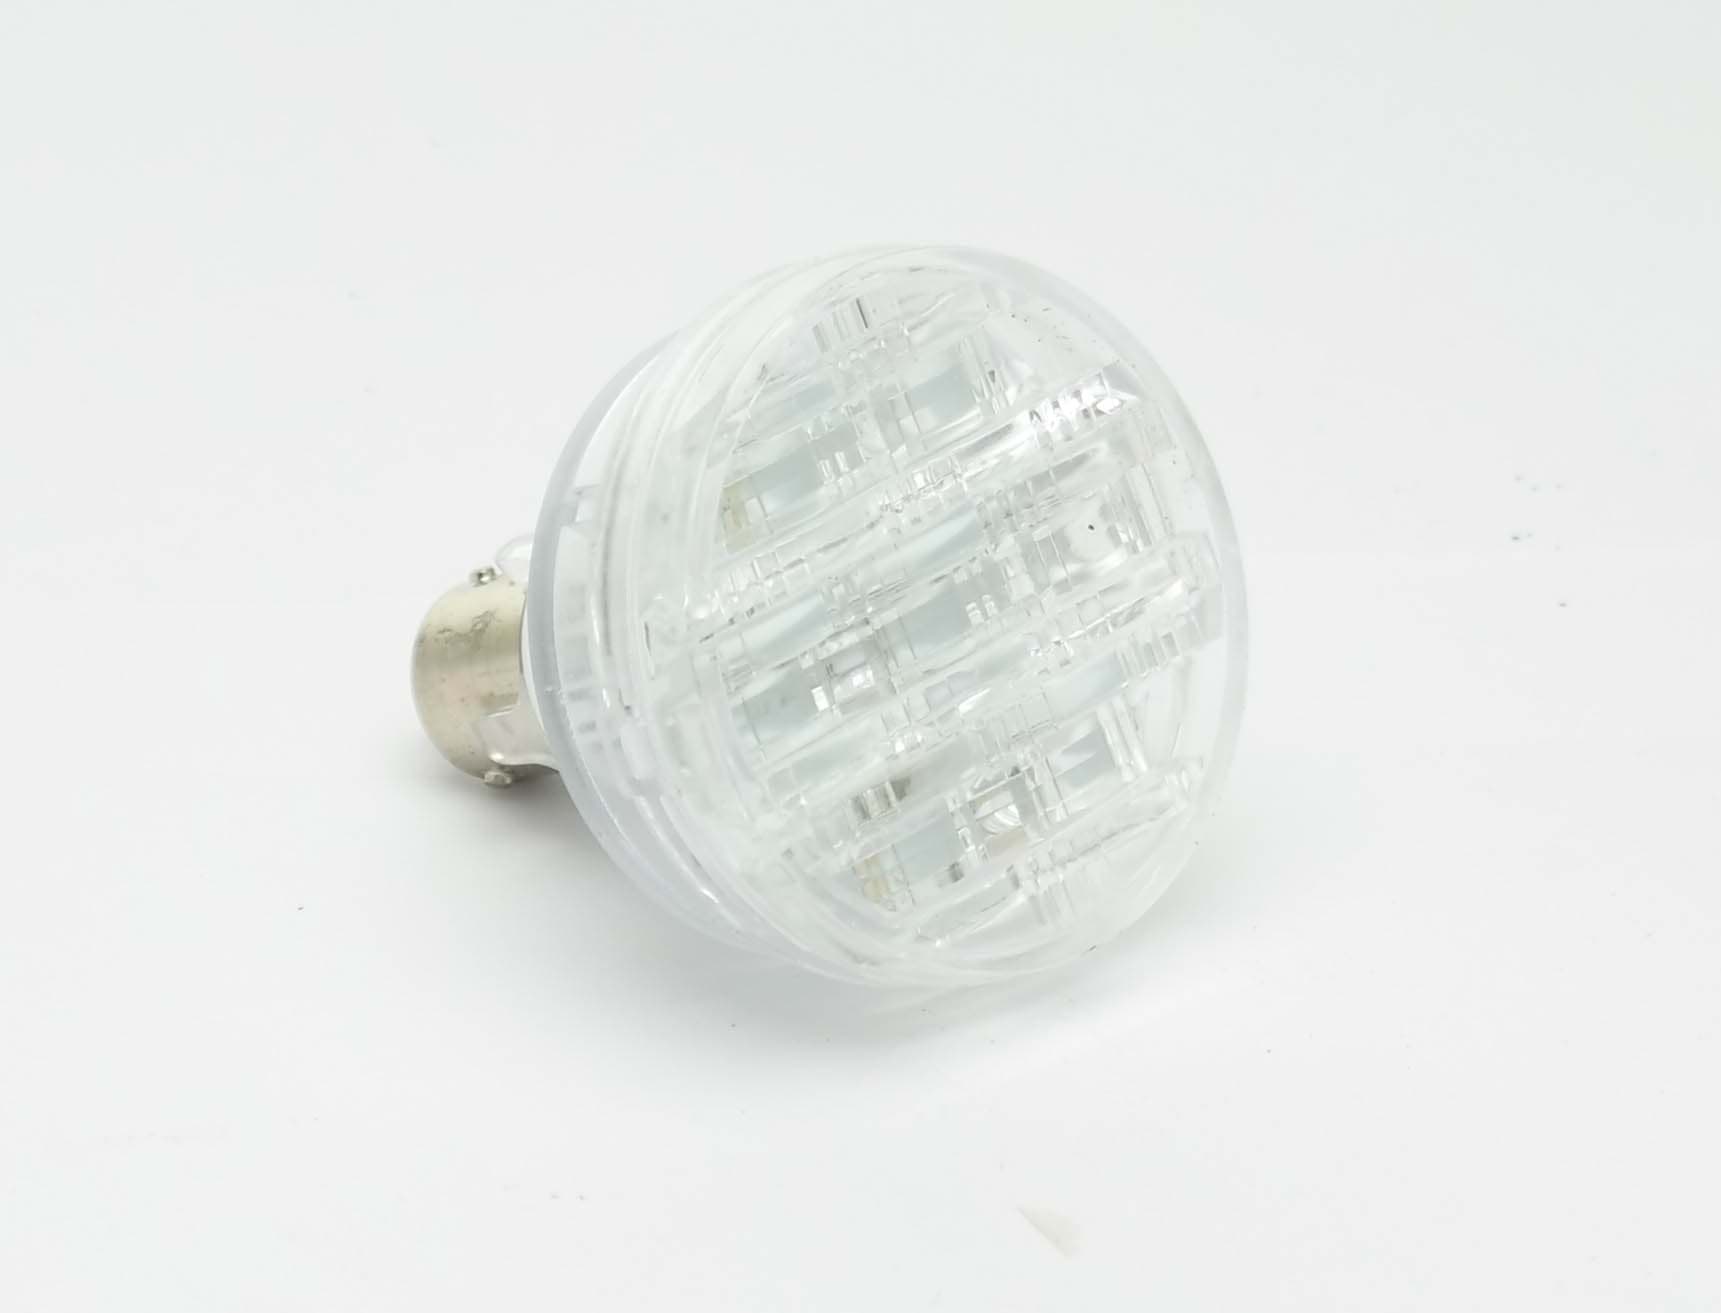 Picture of LED Blinklampe für Europoint II orig Aspöck  12-1560-011 mit Zulassung